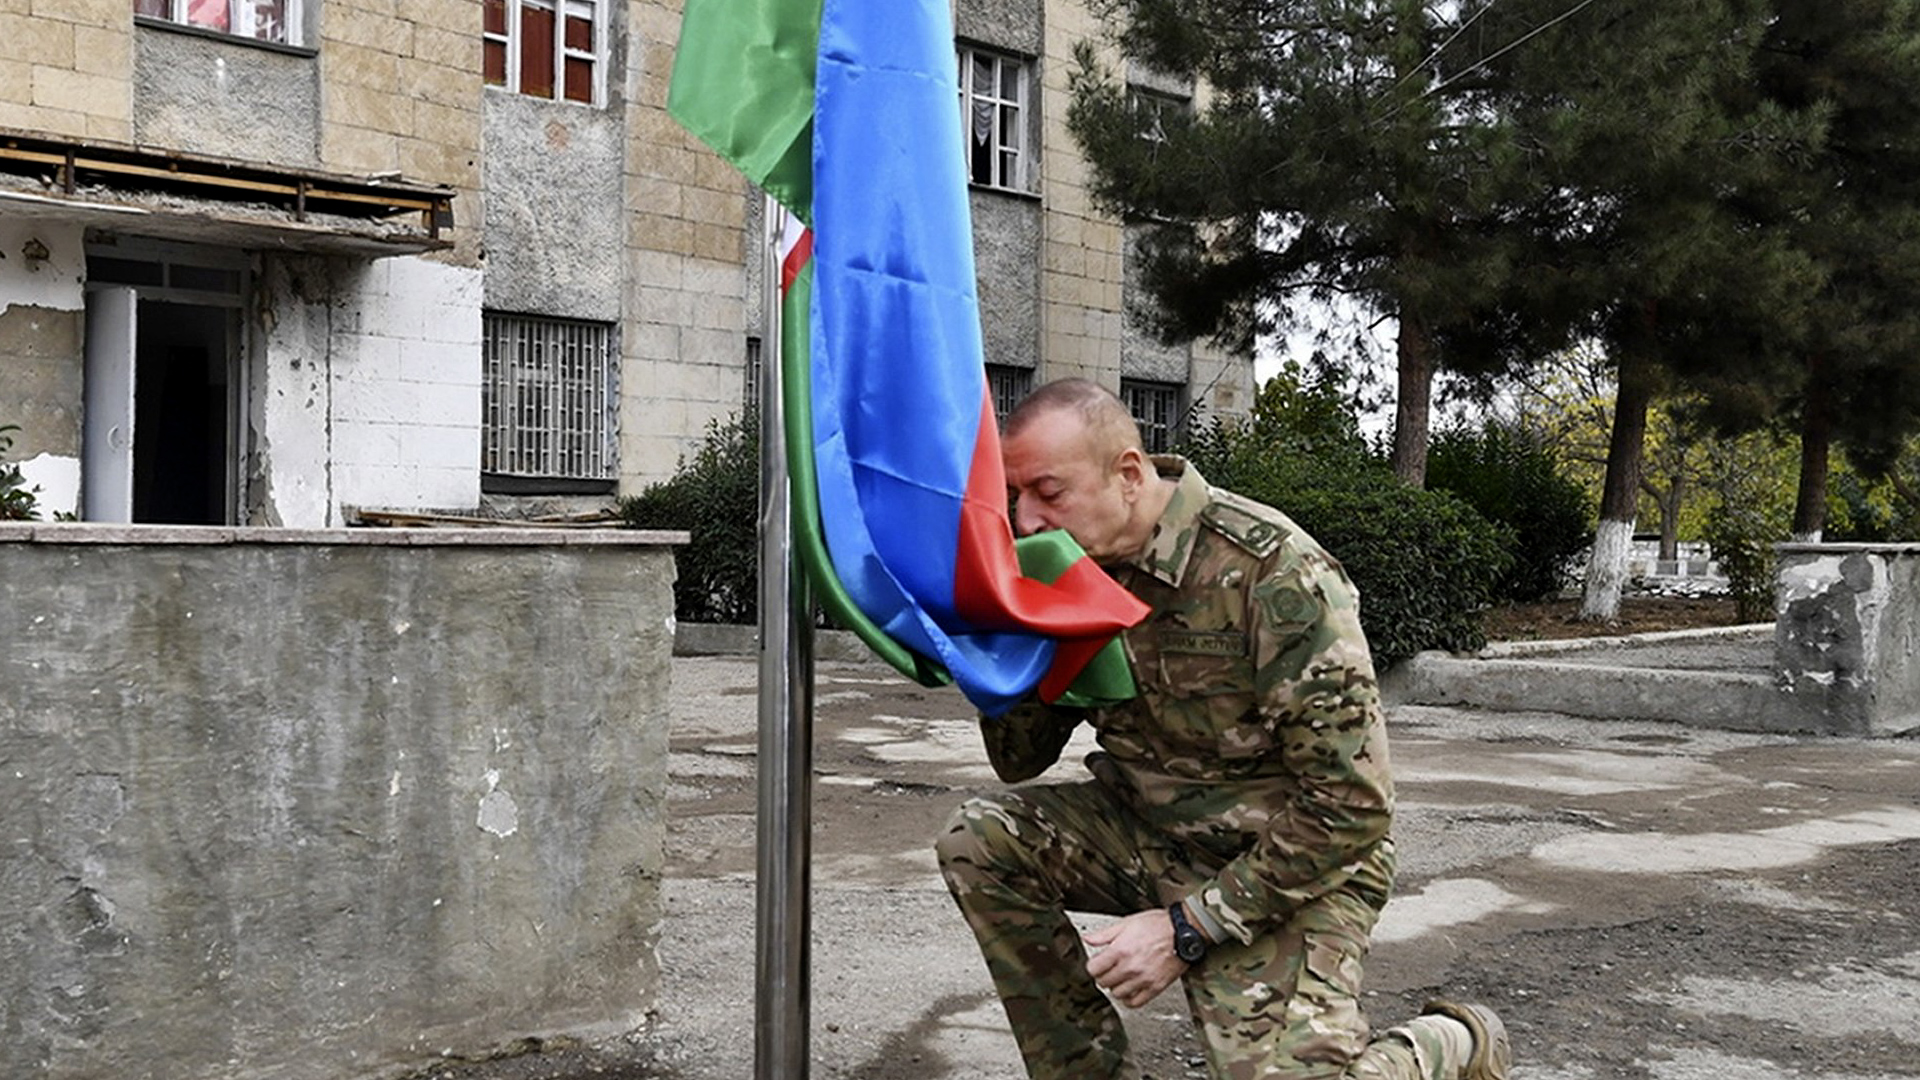 Aliyev preparing to cut Karabakh off from Armenia, warns Pashinyan